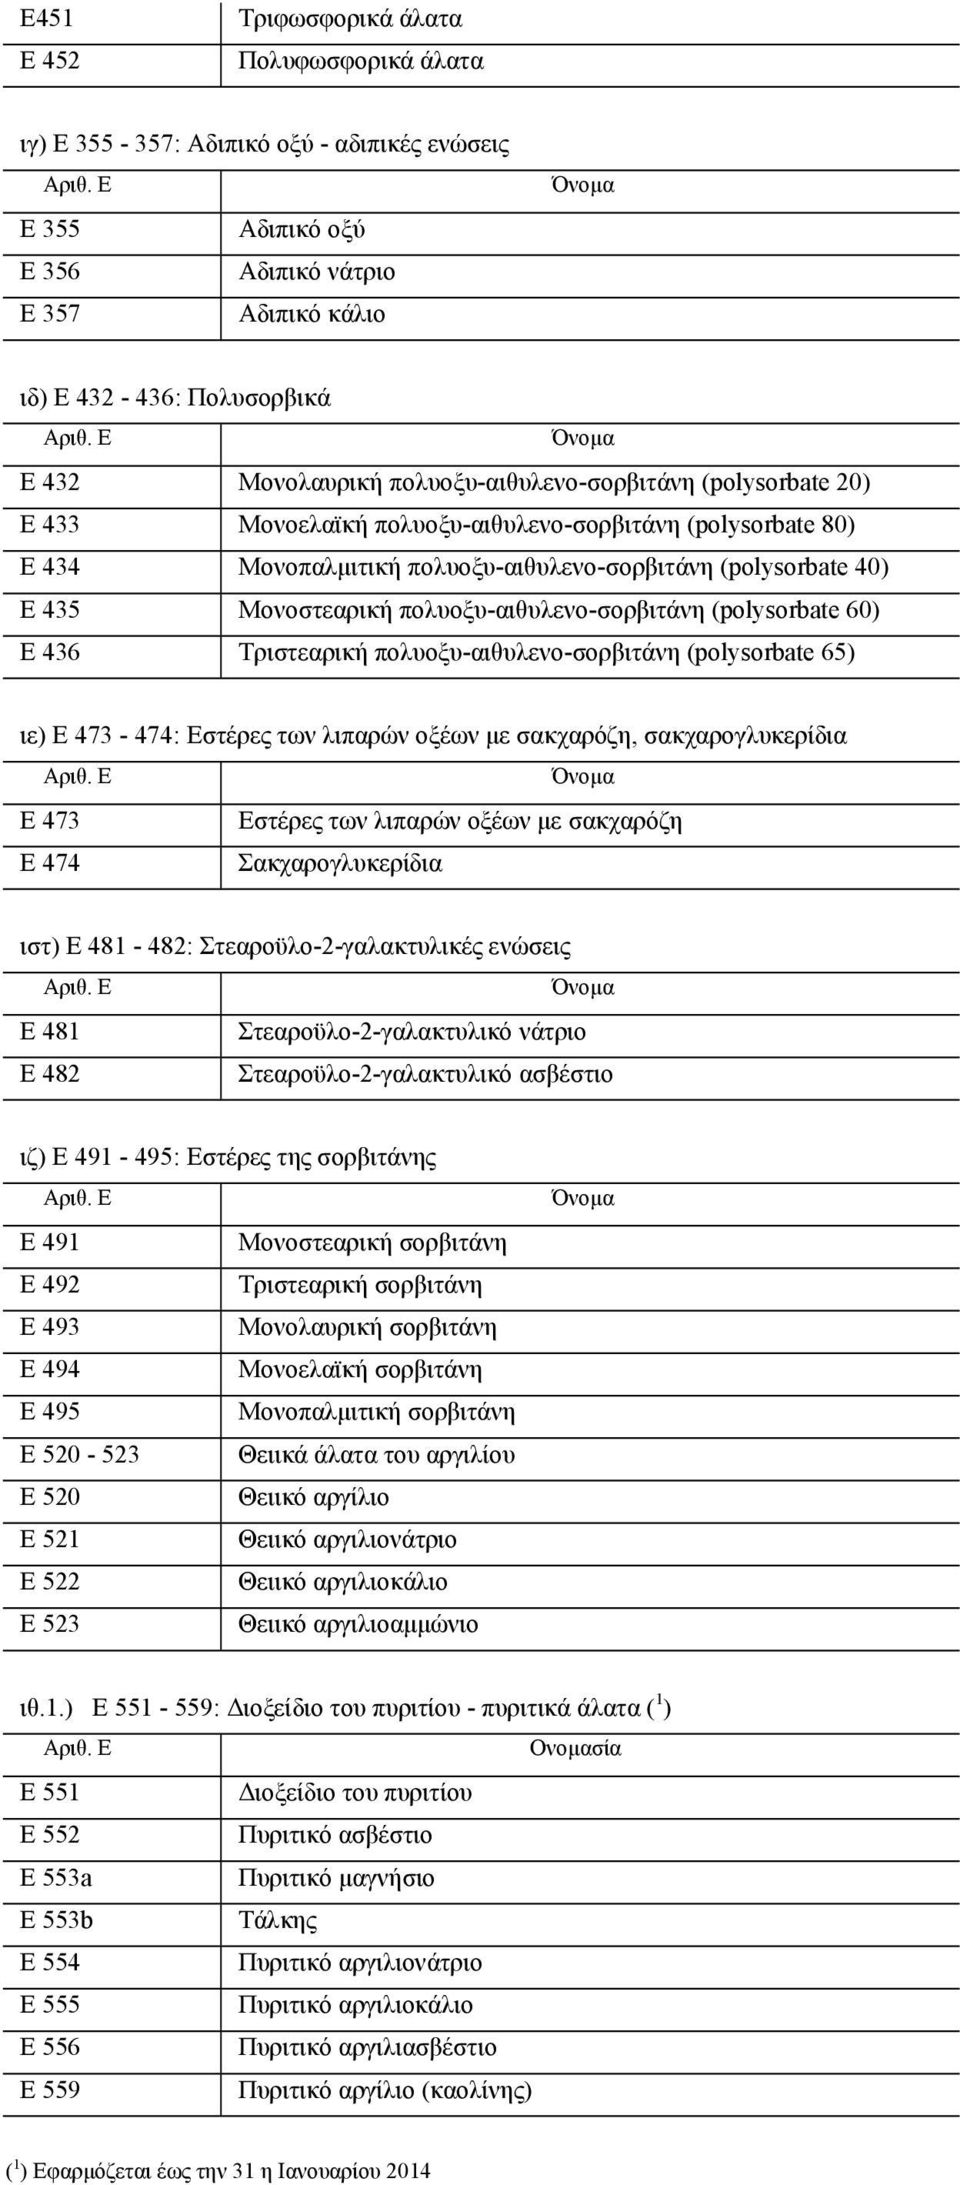 πολυοξυ-αιθυλενο-σορβιτάνη (polysorbate 60) E 436 Τριστεαρική πολυοξυ-αιθυλενο-σορβιτάνη (polysorbate 65) ιε) E 473-474: Εστέρες των λιπαρών οξέων με σακχαρόζη, σακχαρογλυκερίδια E 473 Εστέρες των